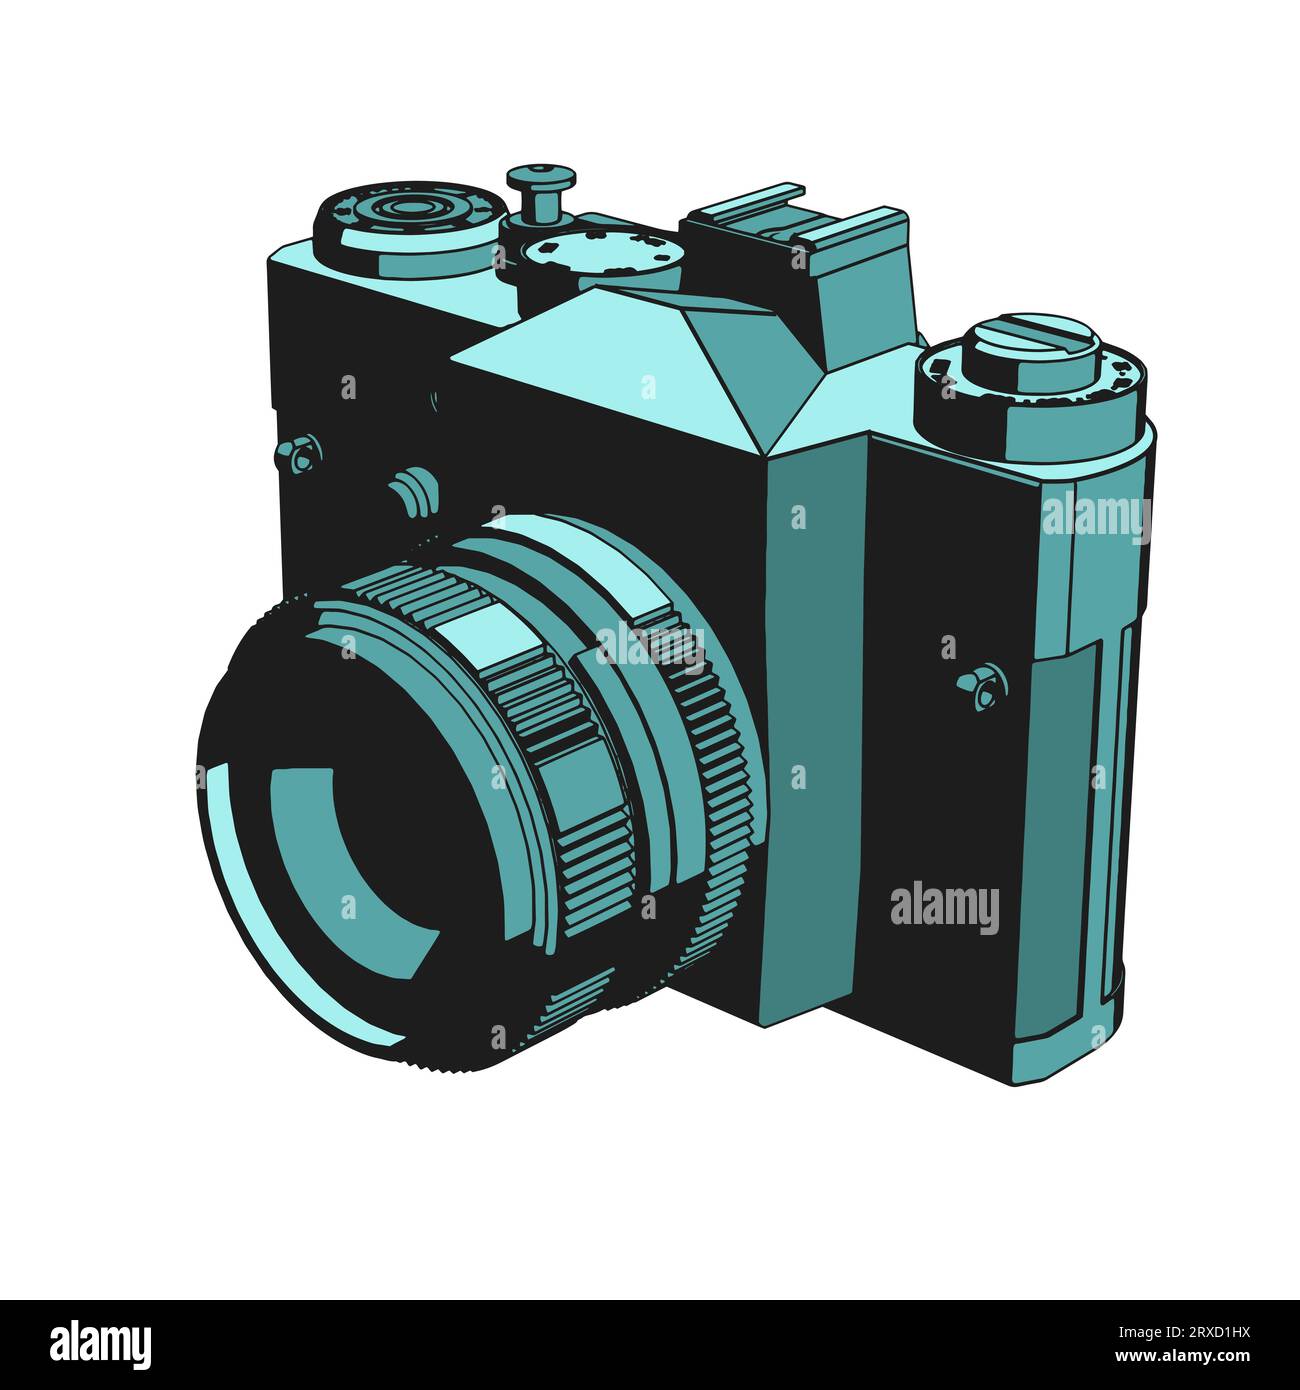 Illustrazione vettoriale stilizzata della fotocamera reflex a film retro Illustrazione Vettoriale